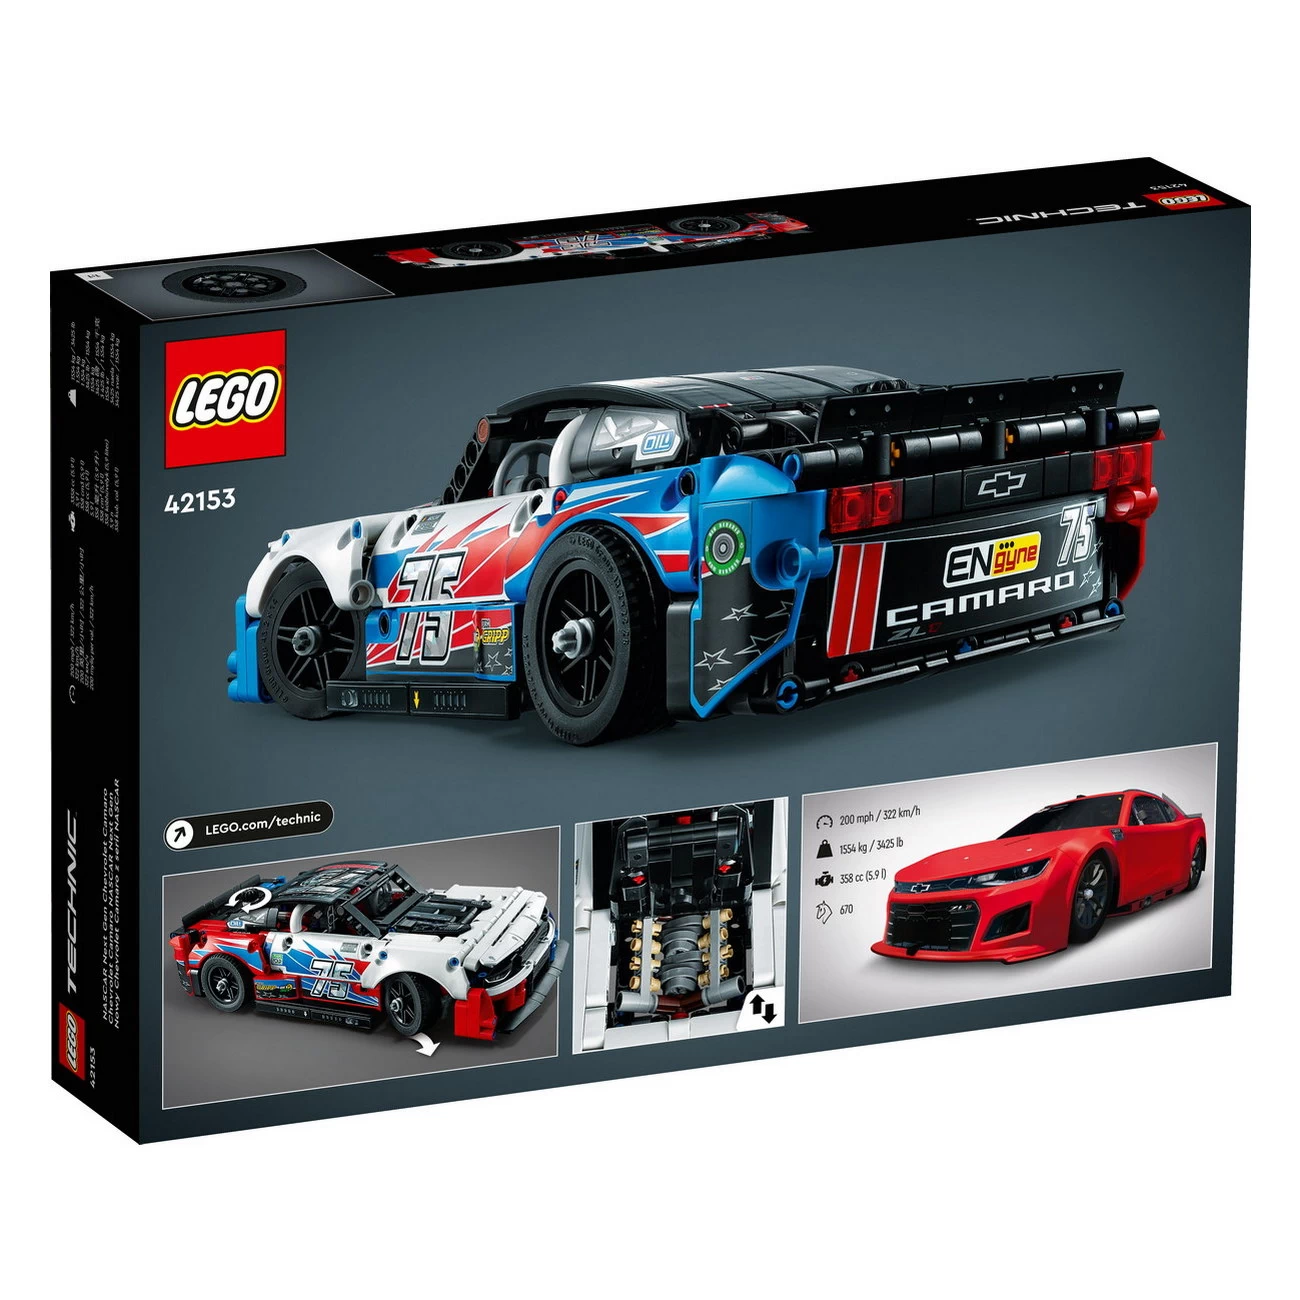 LEGO Technic 42153 - NASCAR Next Gen Chevrolet Camaro